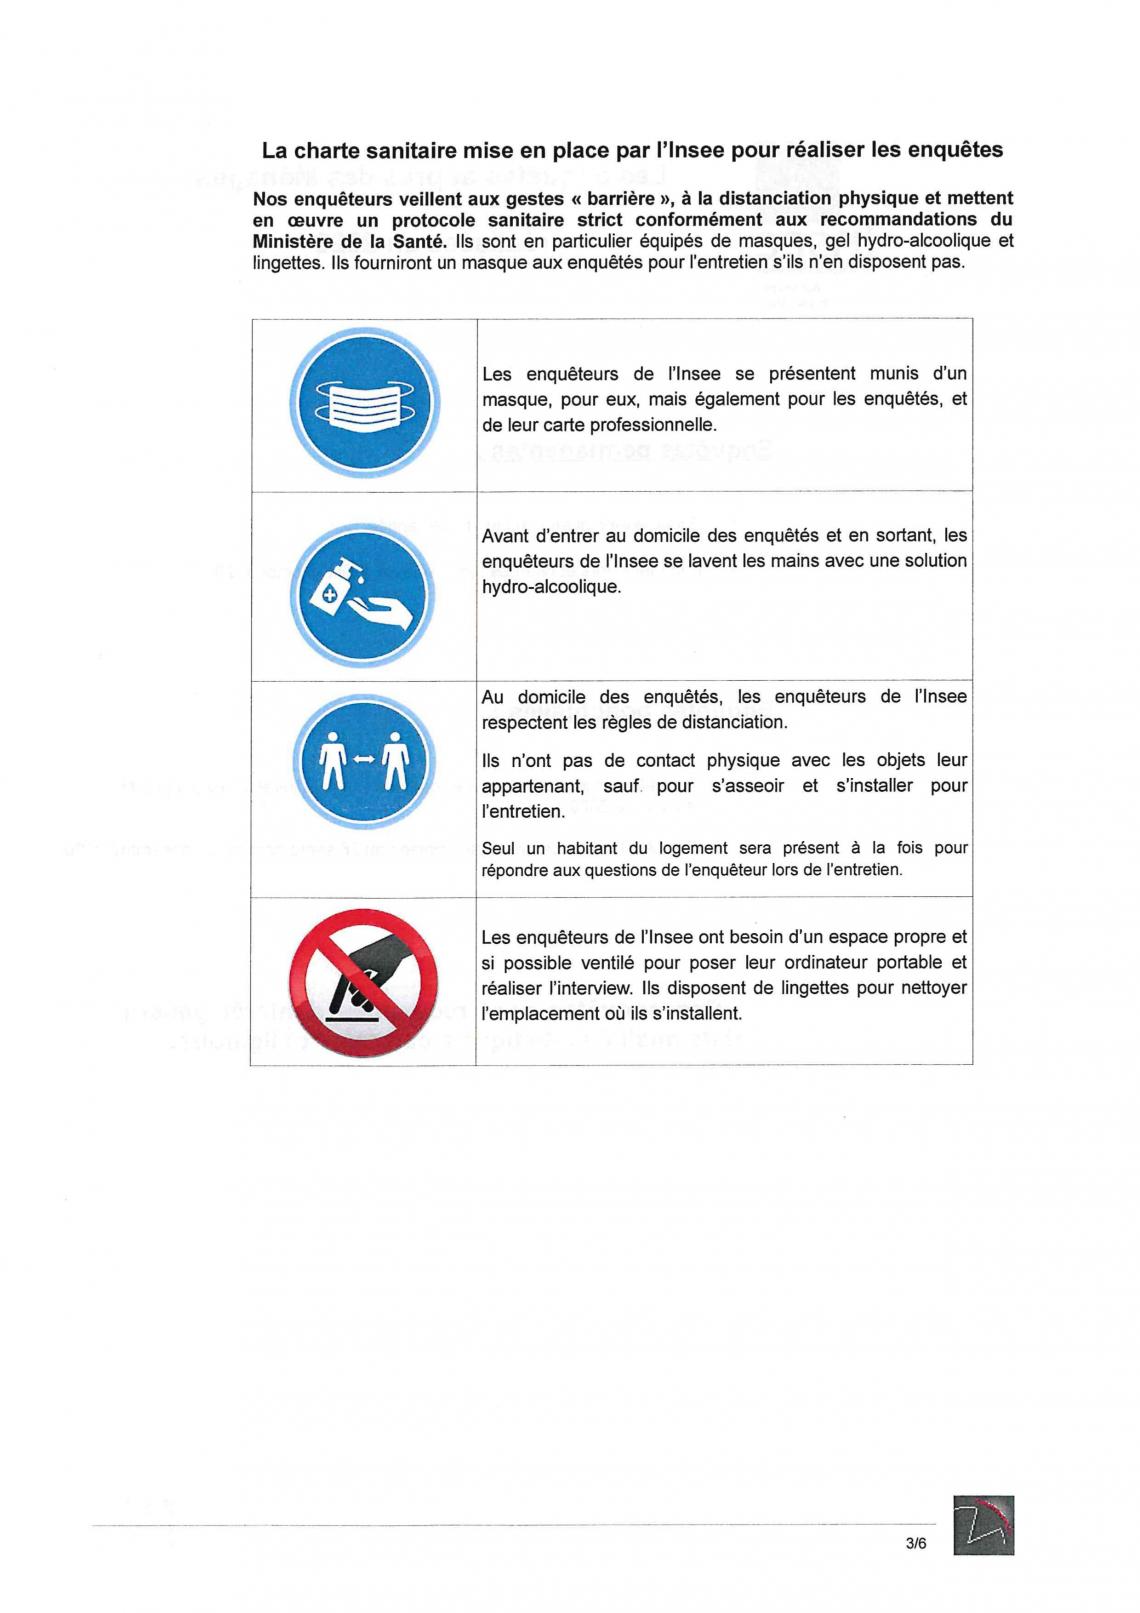 Charte sanitaire de l'insee pour réaliser les enquêtes en période de crise sanitaire